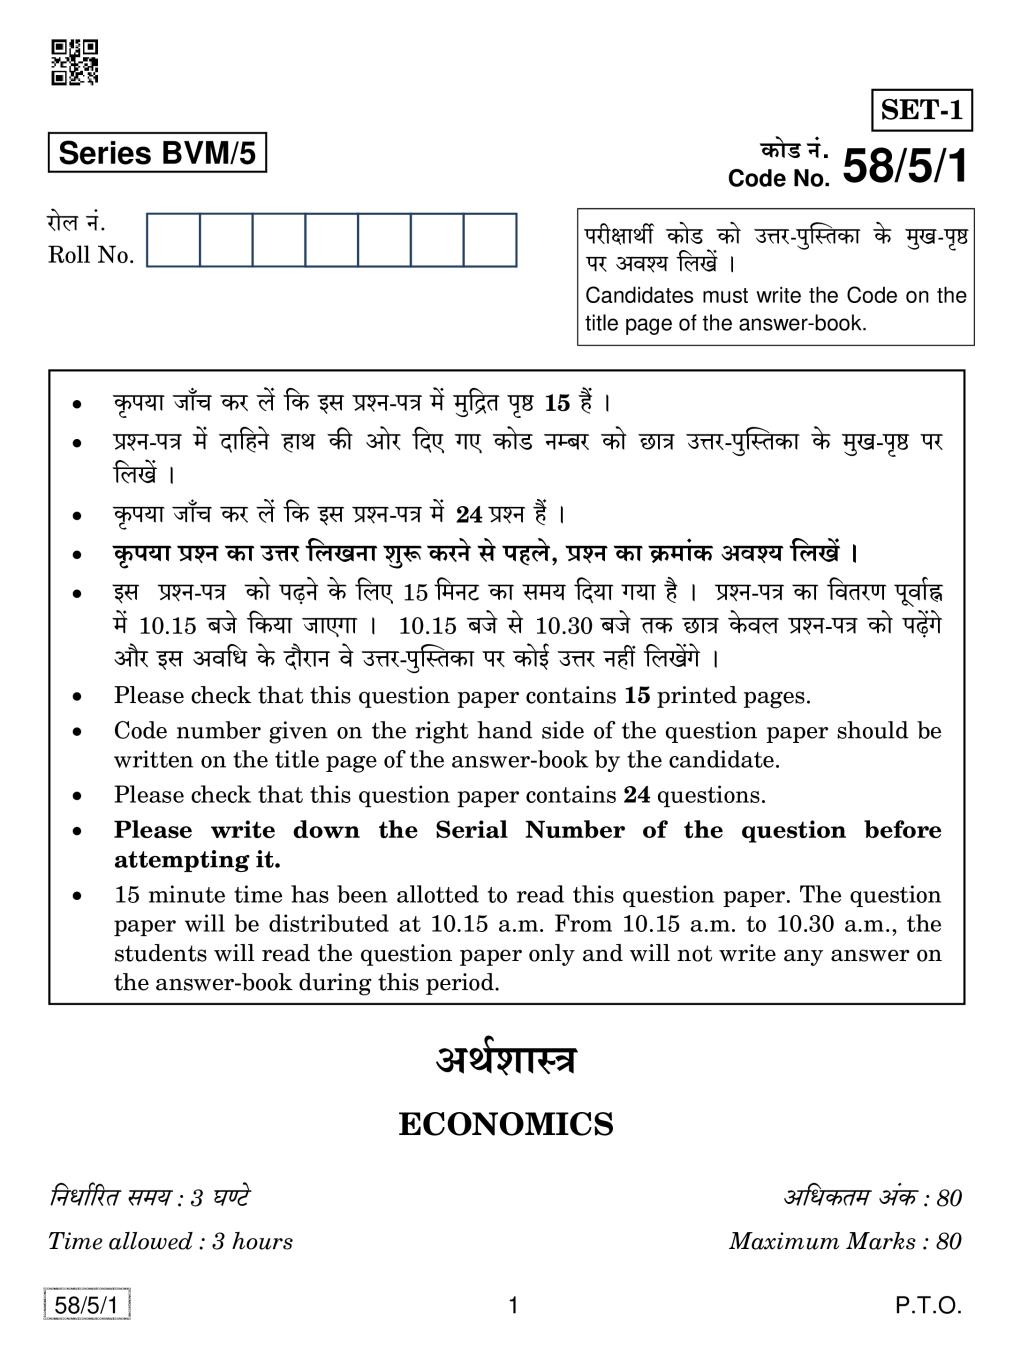 CBSE Class 12 Economics Question Paper 2019 Set 5 - Page 1